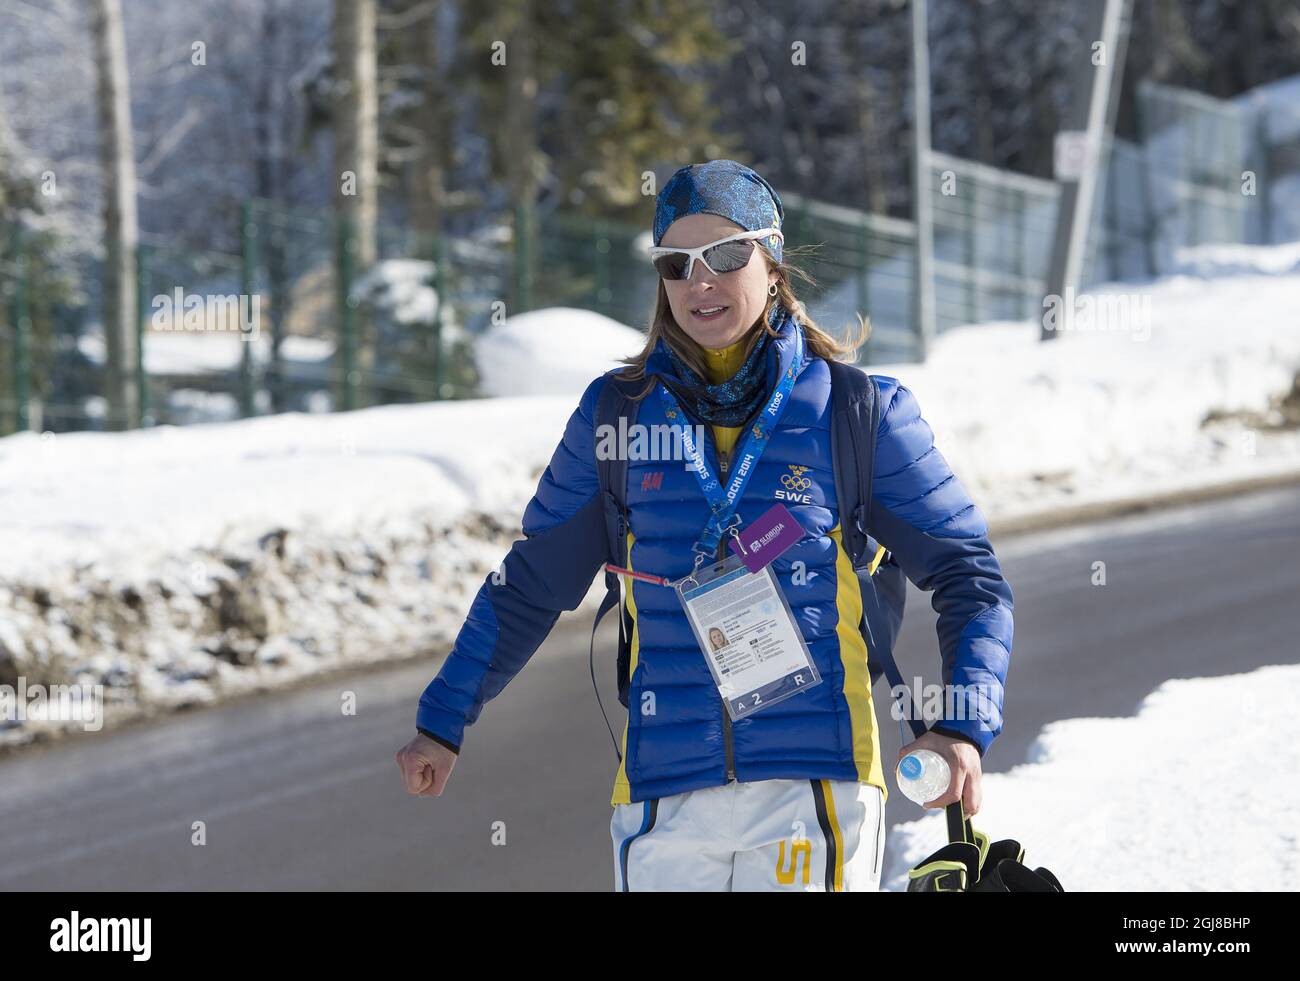 SOTSCHI 2014-02-05 die schwedische Langlauffahrerin Anna Haag nach dem Training bei den Olympischen Spielen 2014 in Sotschi am 5. Februar 2014. Foto: Maja Suslin / TT / Kod 10300 Stockfoto